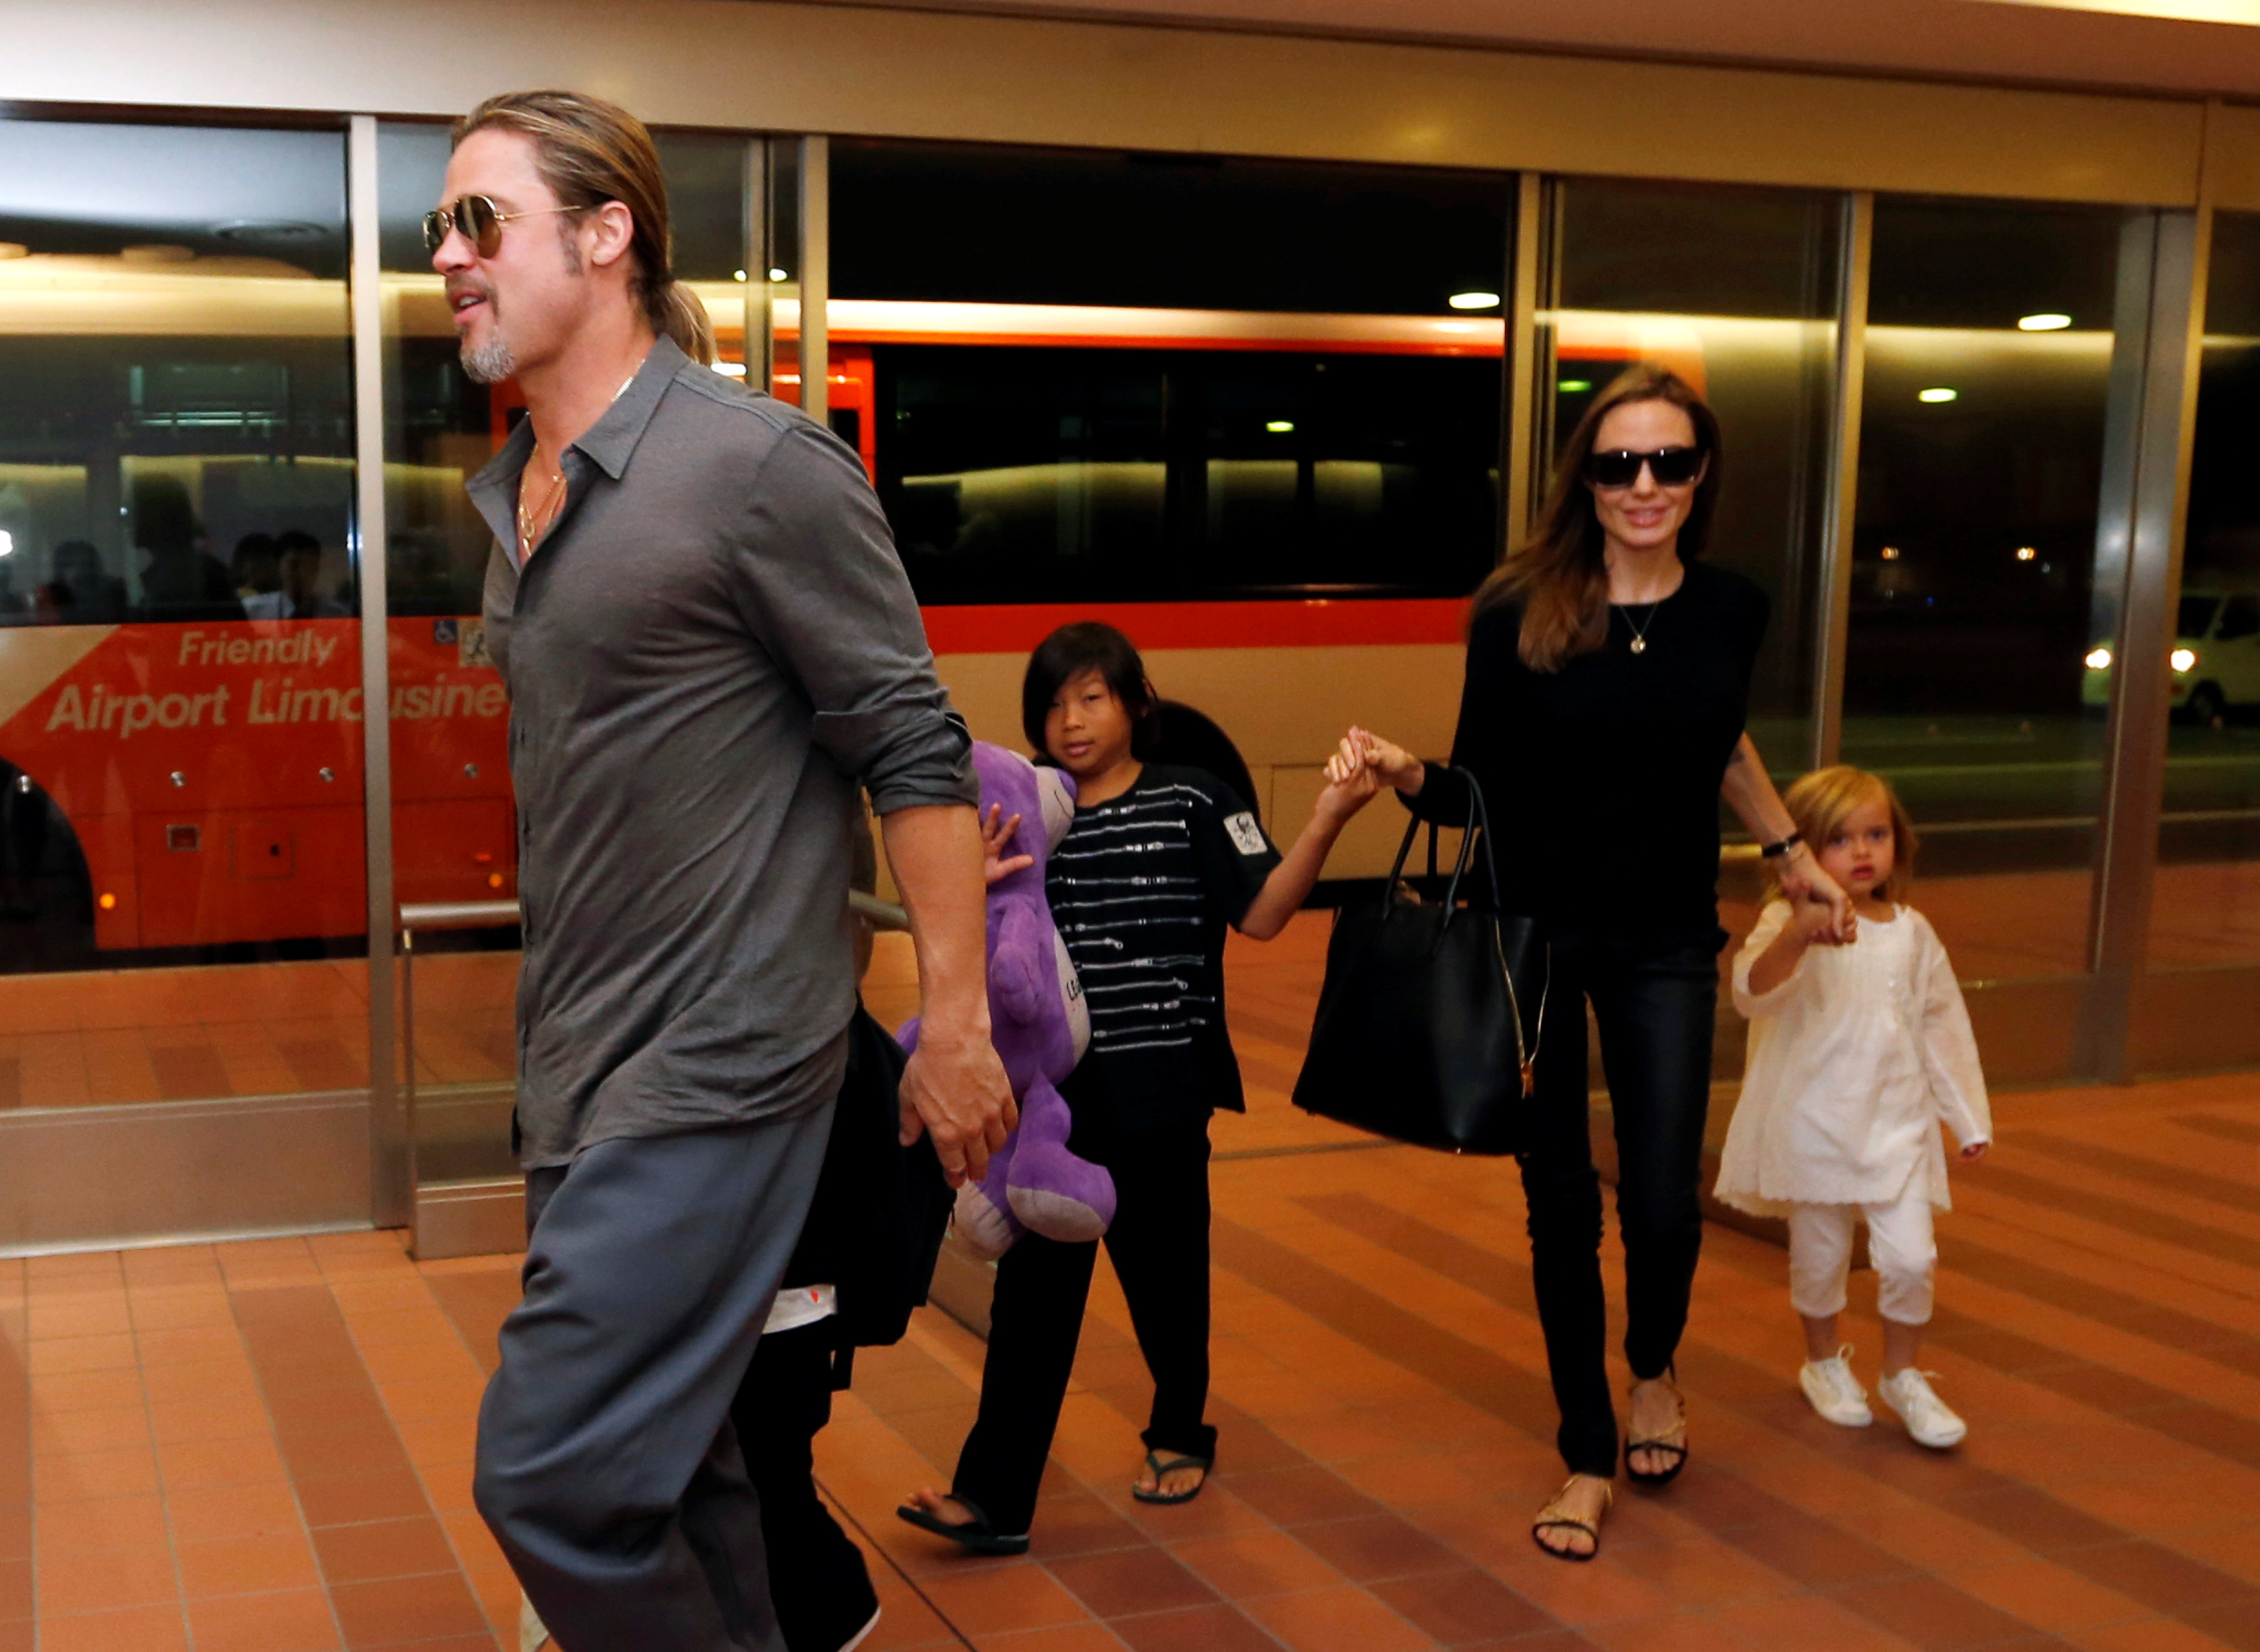 Foto de archivo: Pitt y Jolie llegan con sus hijos Knox, Vivienne y Pax al Aeropuerto Internacional de Haneda en Tokio, Japón, el 28 de julio de 2013 (REUTERS/Issei Kato)